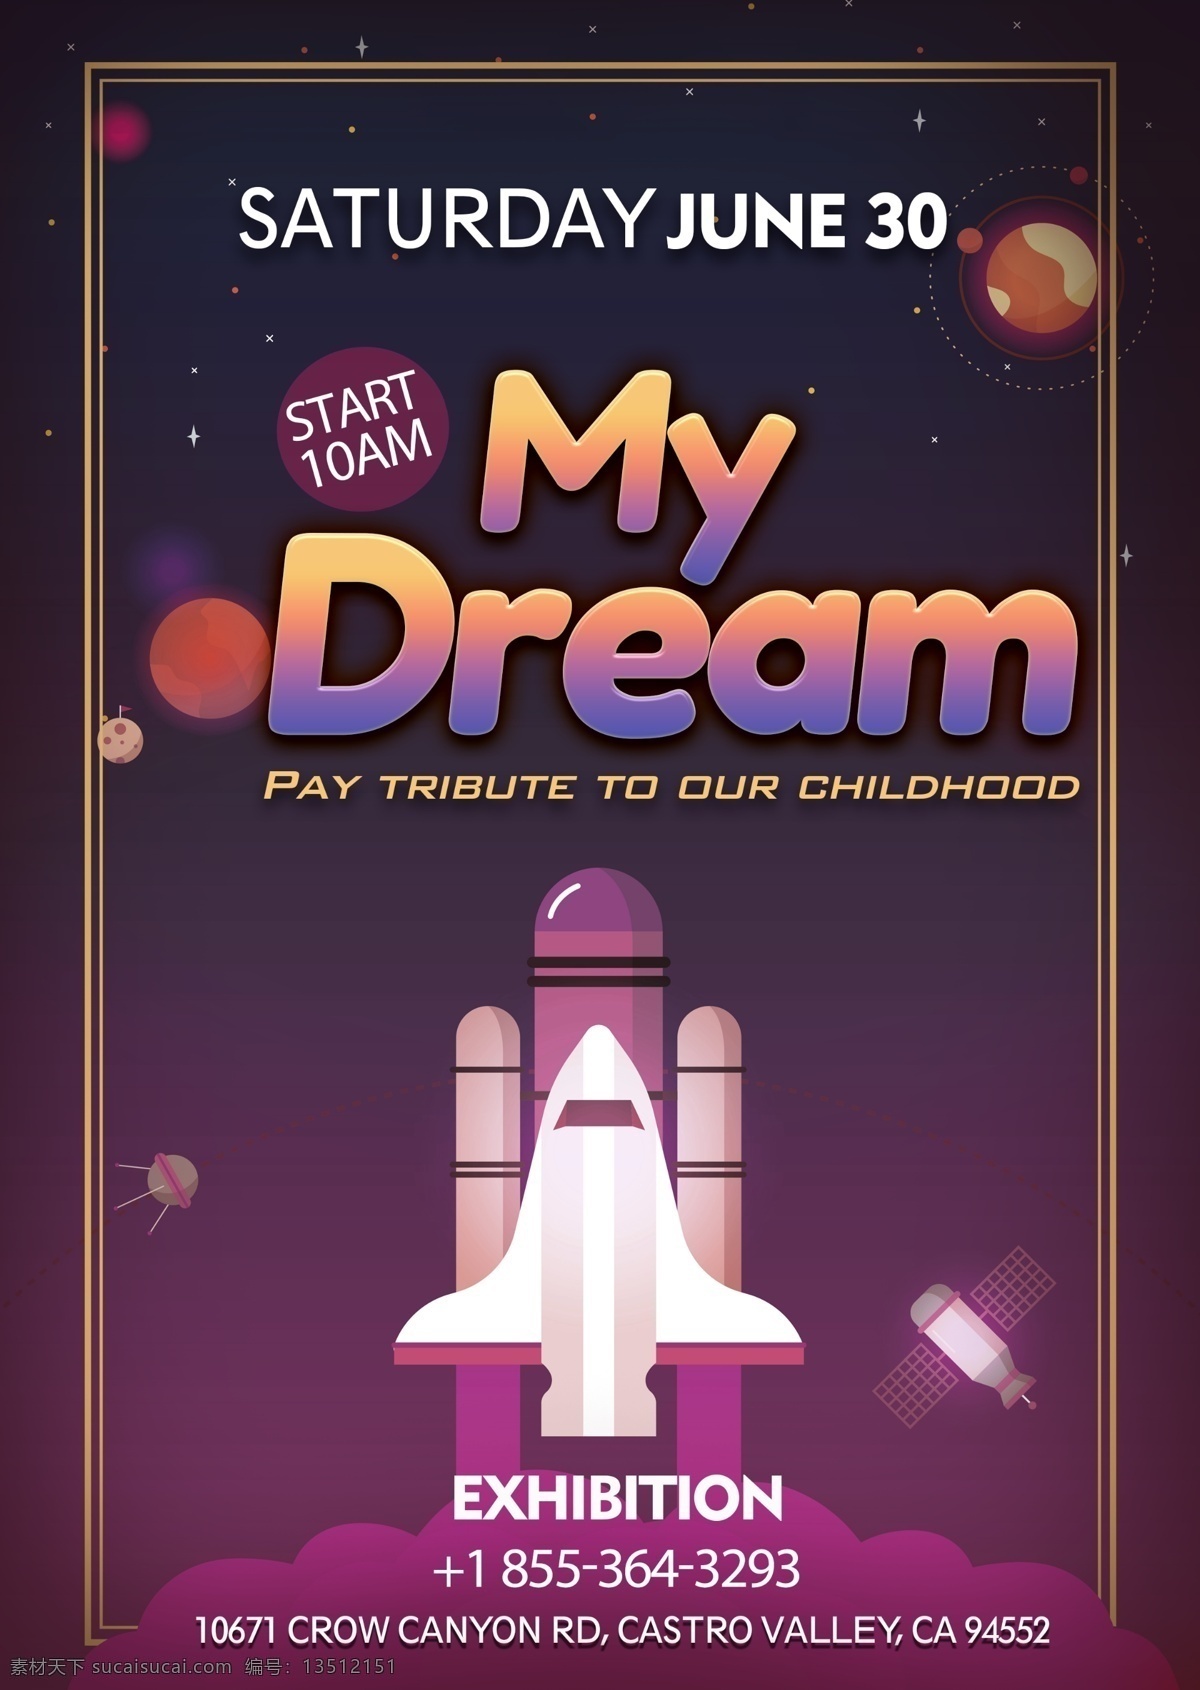 梦想 展览 海报 火箭 儿童 孩子 紫色 梯度 明星 行星 星系 请帖 卡 科学 技术 可爱